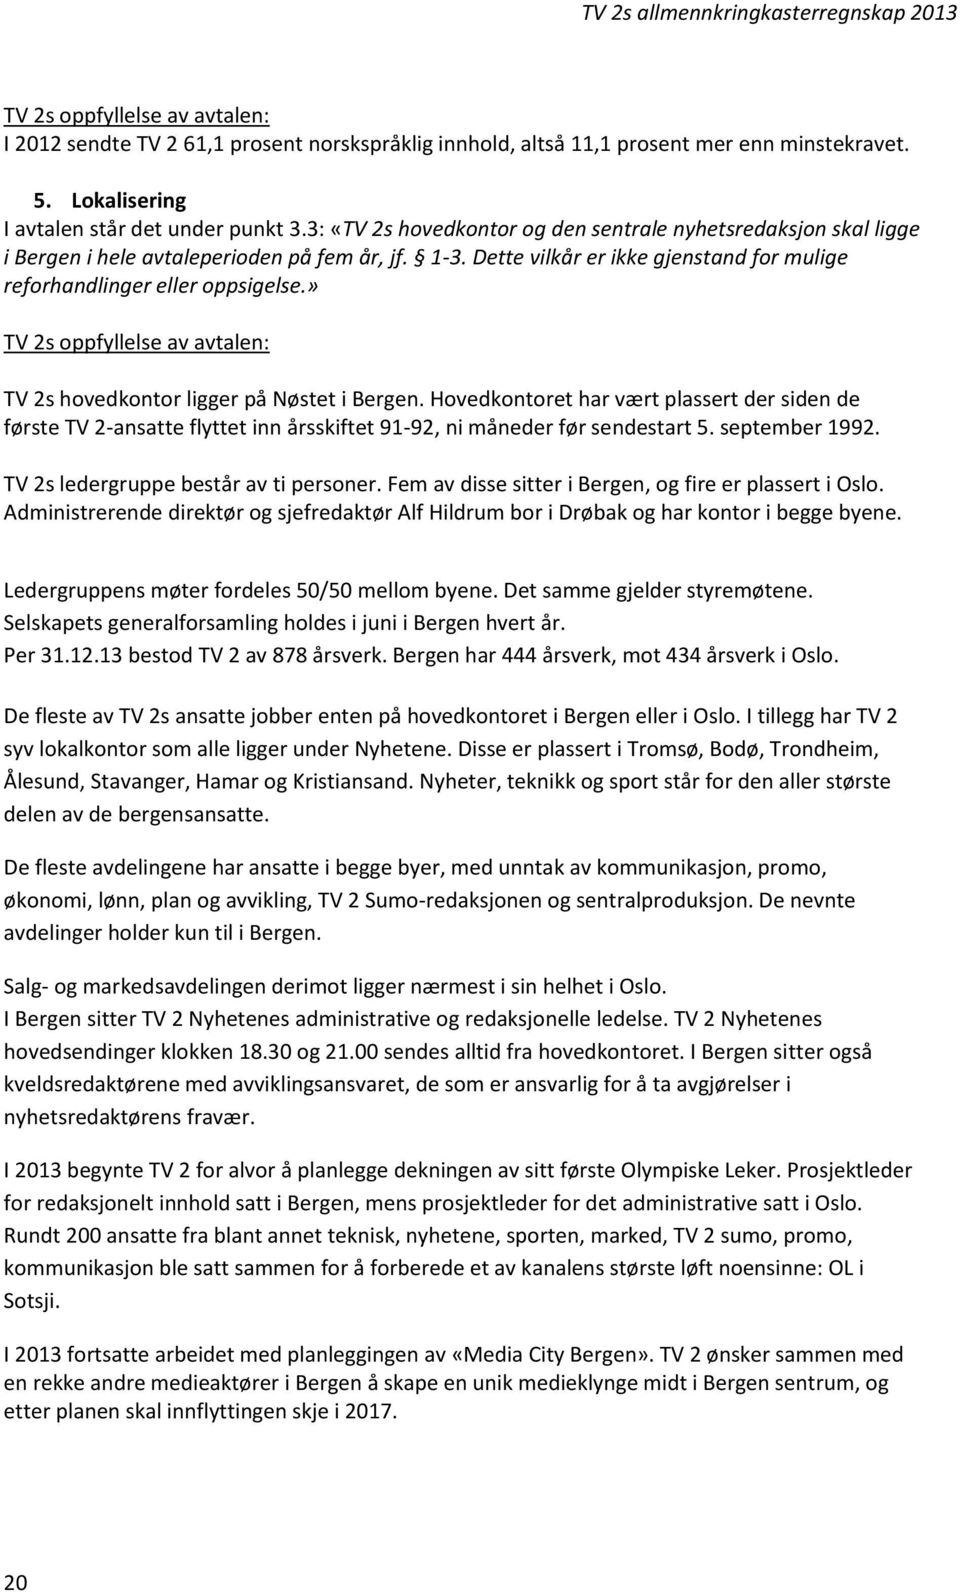 » TV 2s oppfyllelse av avtalen: TV 2s hovedkontor ligger på Nøstet i Bergen. Hovedkontoret har vært plassert der siden de første TV 2-ansatte flyttet inn årsskiftet 91-92, ni måneder før sendestart 5.